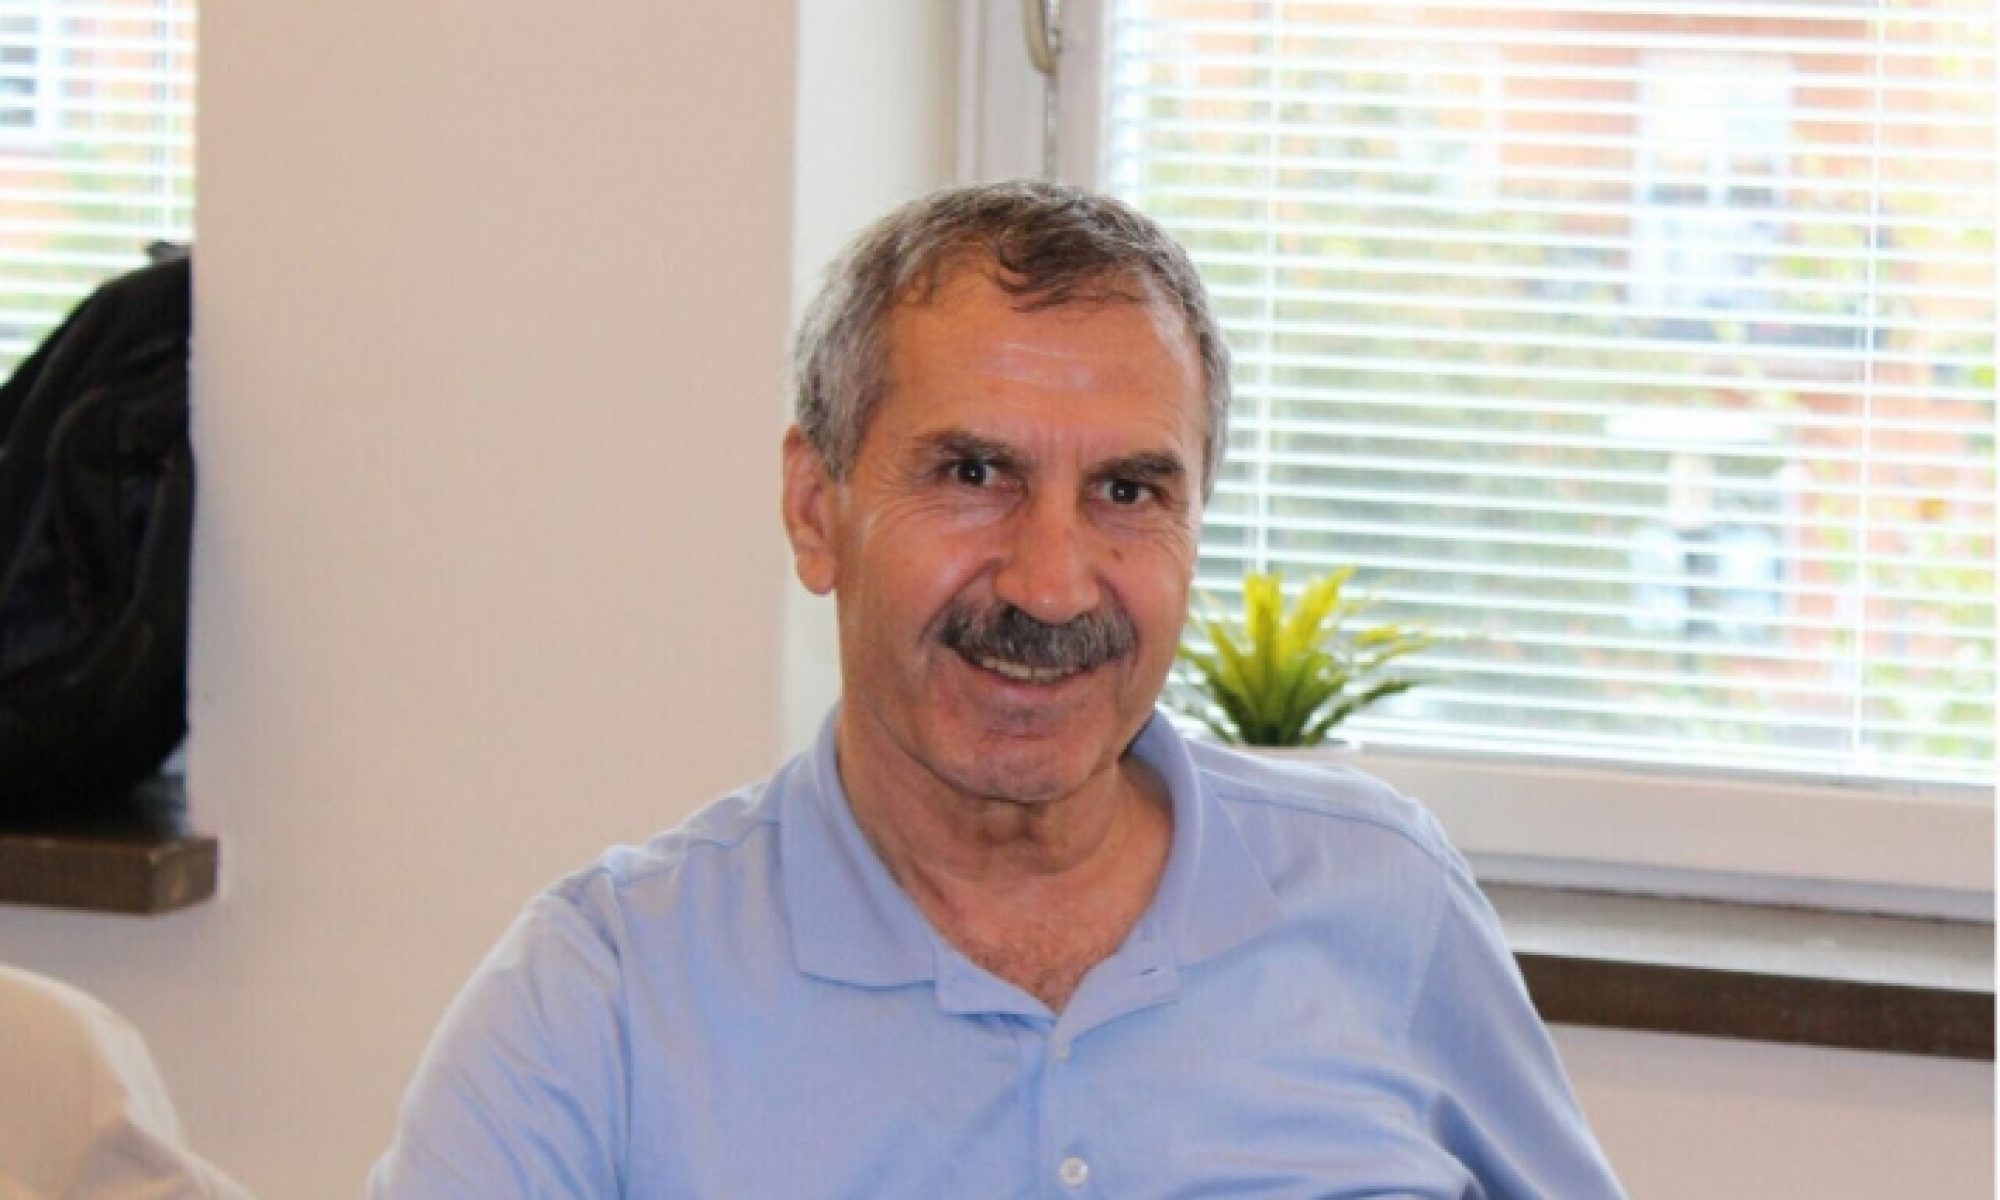 Ankara’da bir süredir koronavirüs tedavisi gören Kürt siyasetçi ve PDK Bakur Sözcüsü Hamit Kılıçaslan hayatını kaybetti. Mardin’in Kızıltepe ilçesinde yaşayan ve 40 gün önce koronavirüs teşhisi konan Kılıçaslan, önce Mardin’deki hastaneye kaldırılmıştı. 31 Ekim’de durumunun ağırlaşması üzerine ambulans uçakla Ankara’ya sevk edilen Kılıçaslan tedavi gördüğü hastanede sabaha karşı hayatını kaybetti. Hamit Kılıçaslan kimdir? 1948 Kızıltepe doğumlu olan Kılıçaslan, Ankara Üniversitesi Hukuk Fakültesi’nde okumaya başladı. Ancak 60’lı yıllarda siyasi nedenlerden dolayı okuldan atılan Kılıçaslan Kürdistan Demokrat Partisi Türkiye (KDPT) içerisinde siyaset yapmaya başladı. 12 Eylül darbesinde Rojava Kürdistanı’na geçen Kılıçaslan daha sonra İsveç’e yerleşmişti. Kılıçaslan aynı zamanda Kürtçe alanında çalışmalar yürütüyordu.